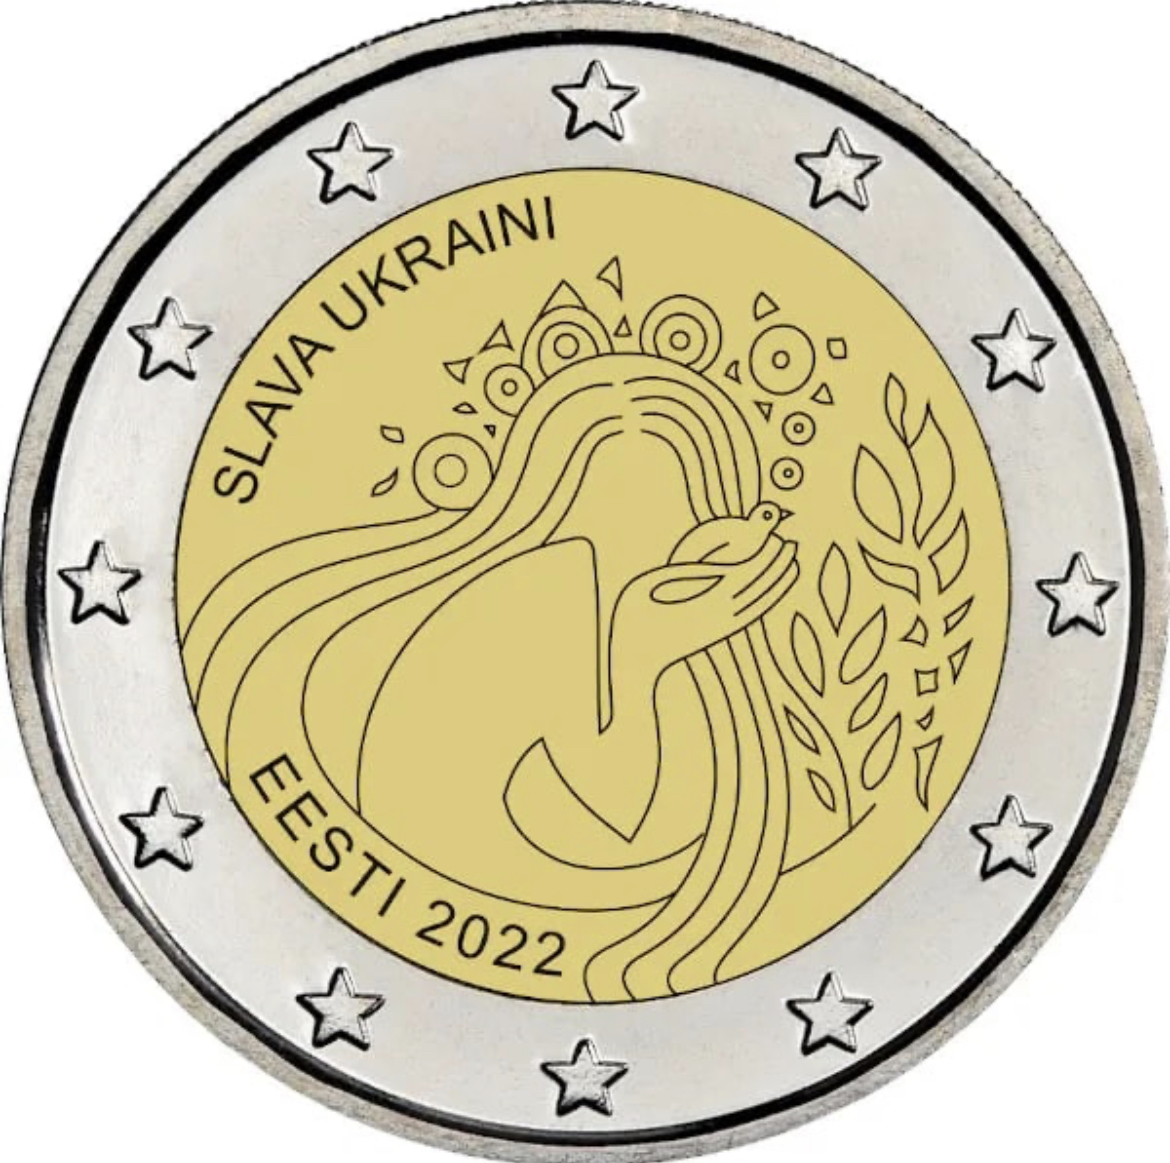 Естонія випустить монету номіналом 2€ з написом “Слава Україні”